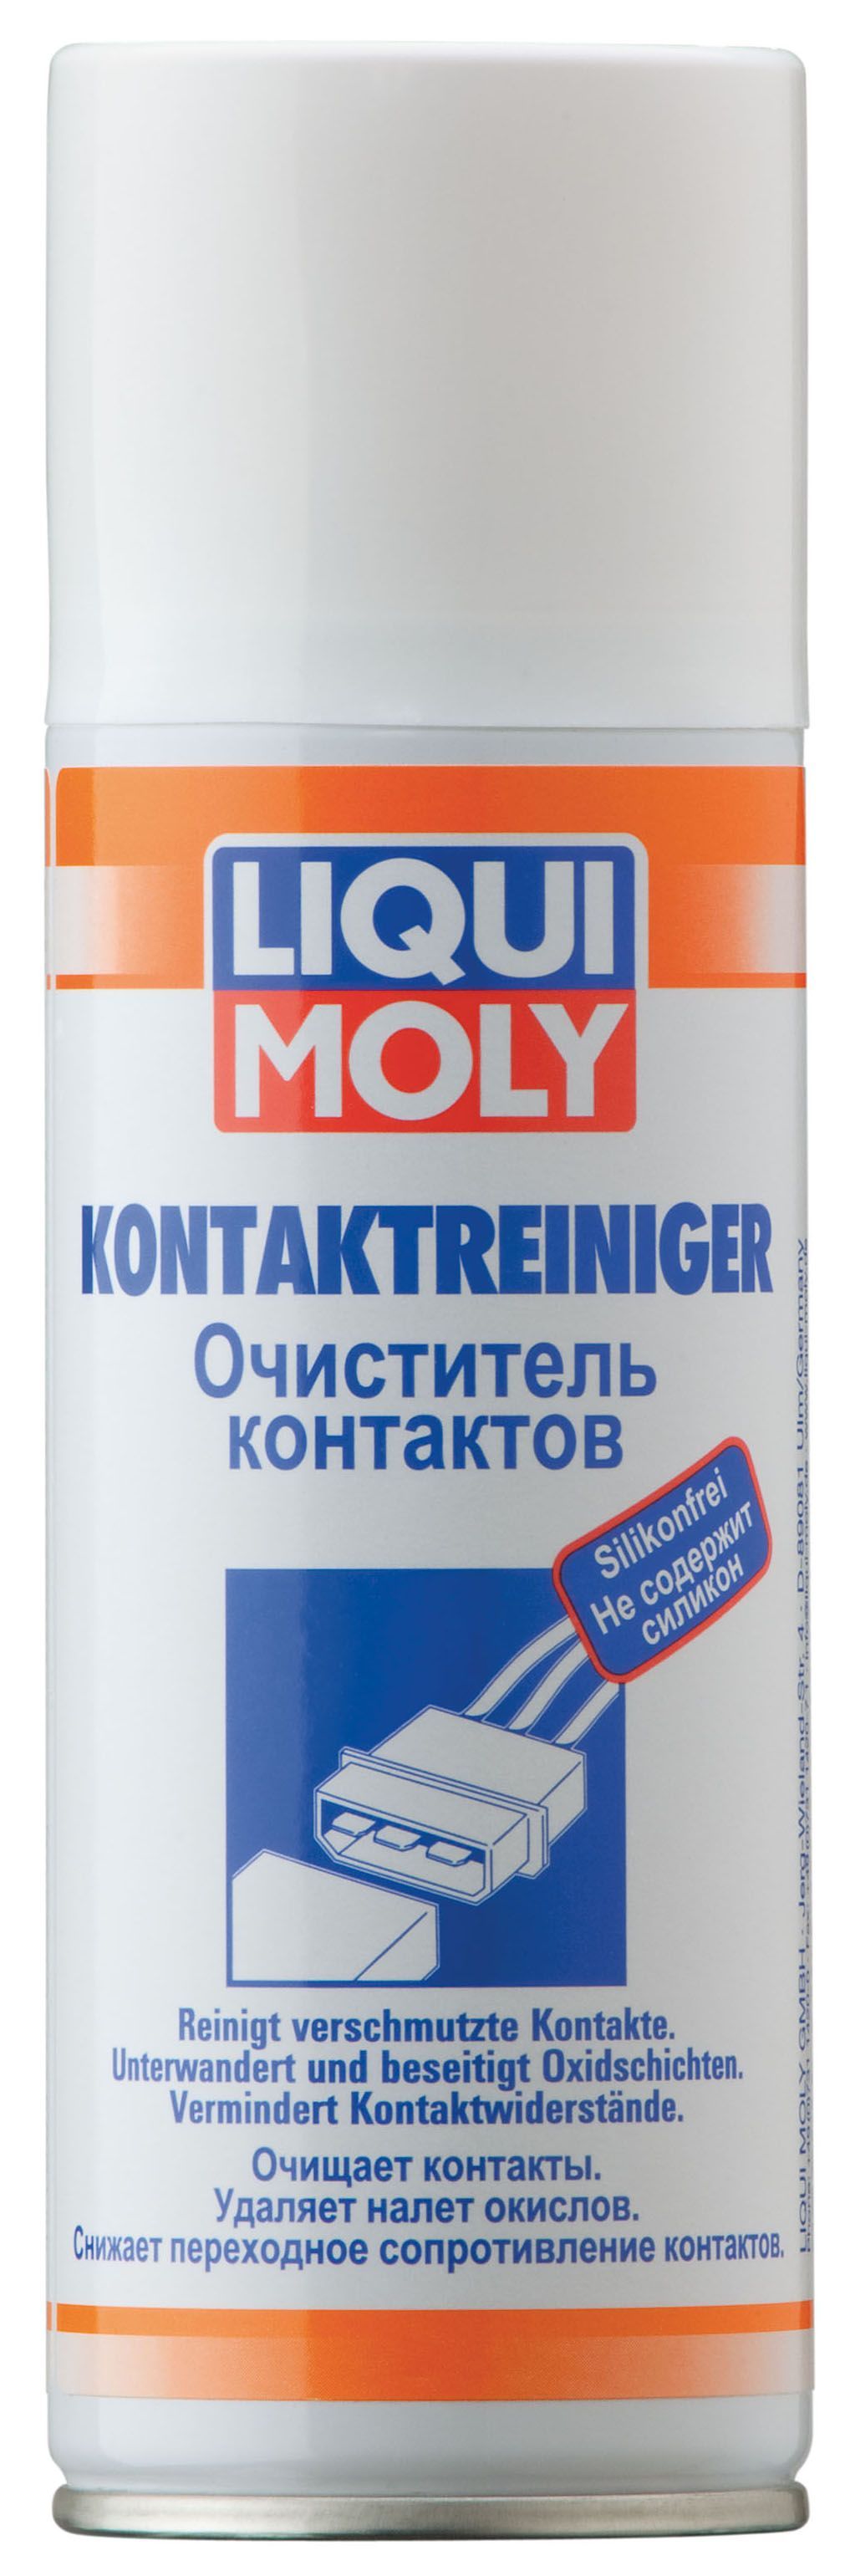 Очиститель контактов Liqui Moly Kontaktreiniger аэрозольный